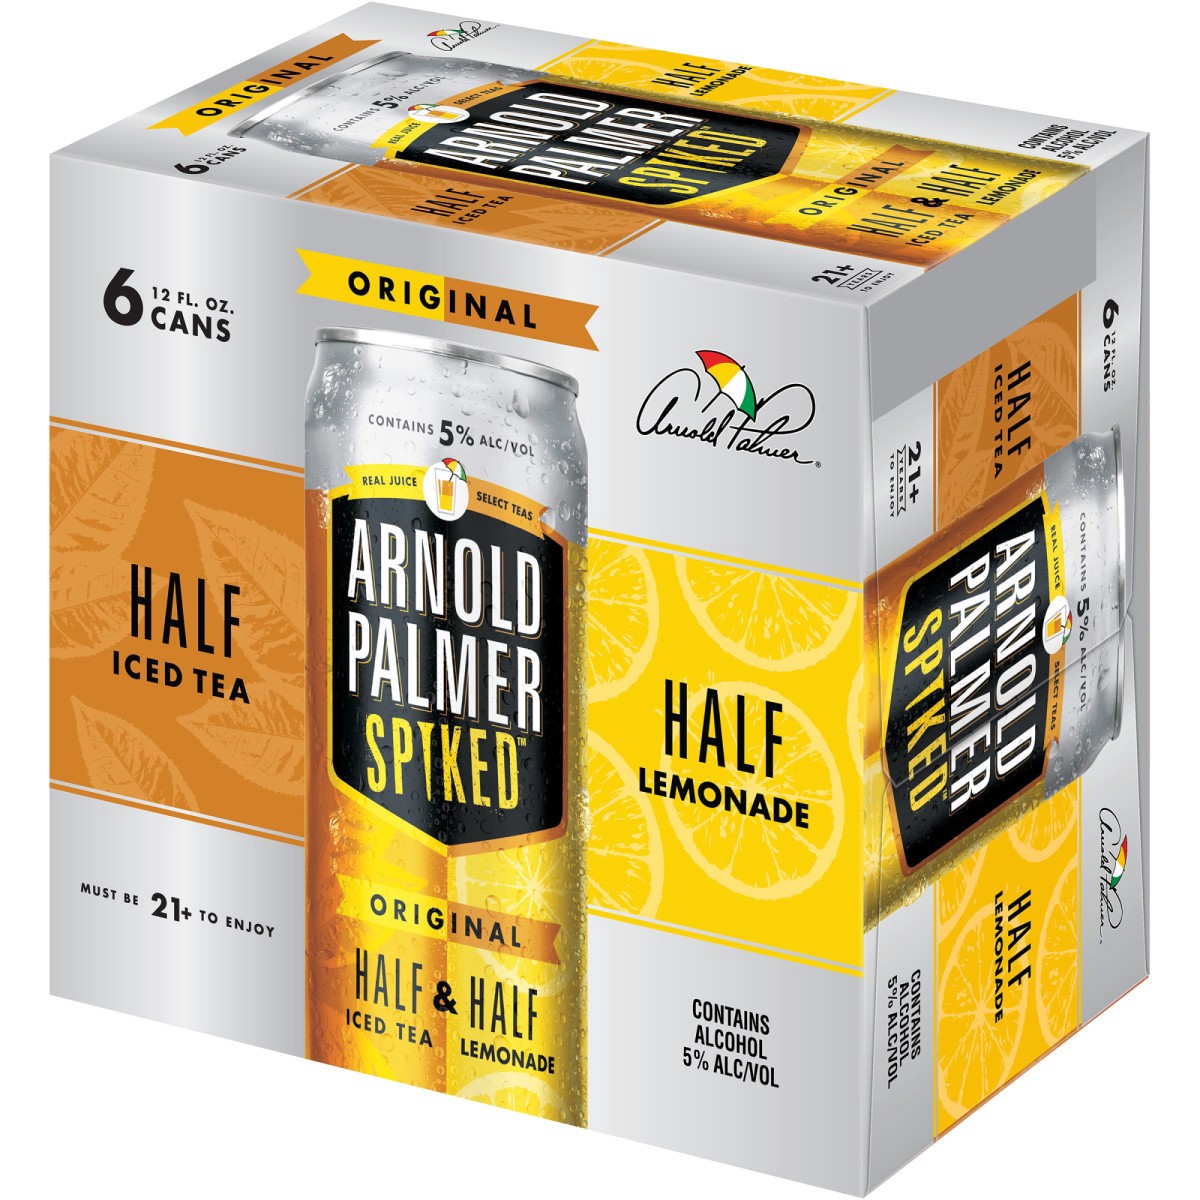 slide 15 of 29, Arnold Palmer Spiked Half & Half Original Arnold Palmer Spiked Original Half & Half Iced Tea Lemonade, 6 Pack, 12 fl oz Cans, 5% ABV, 72 fl oz